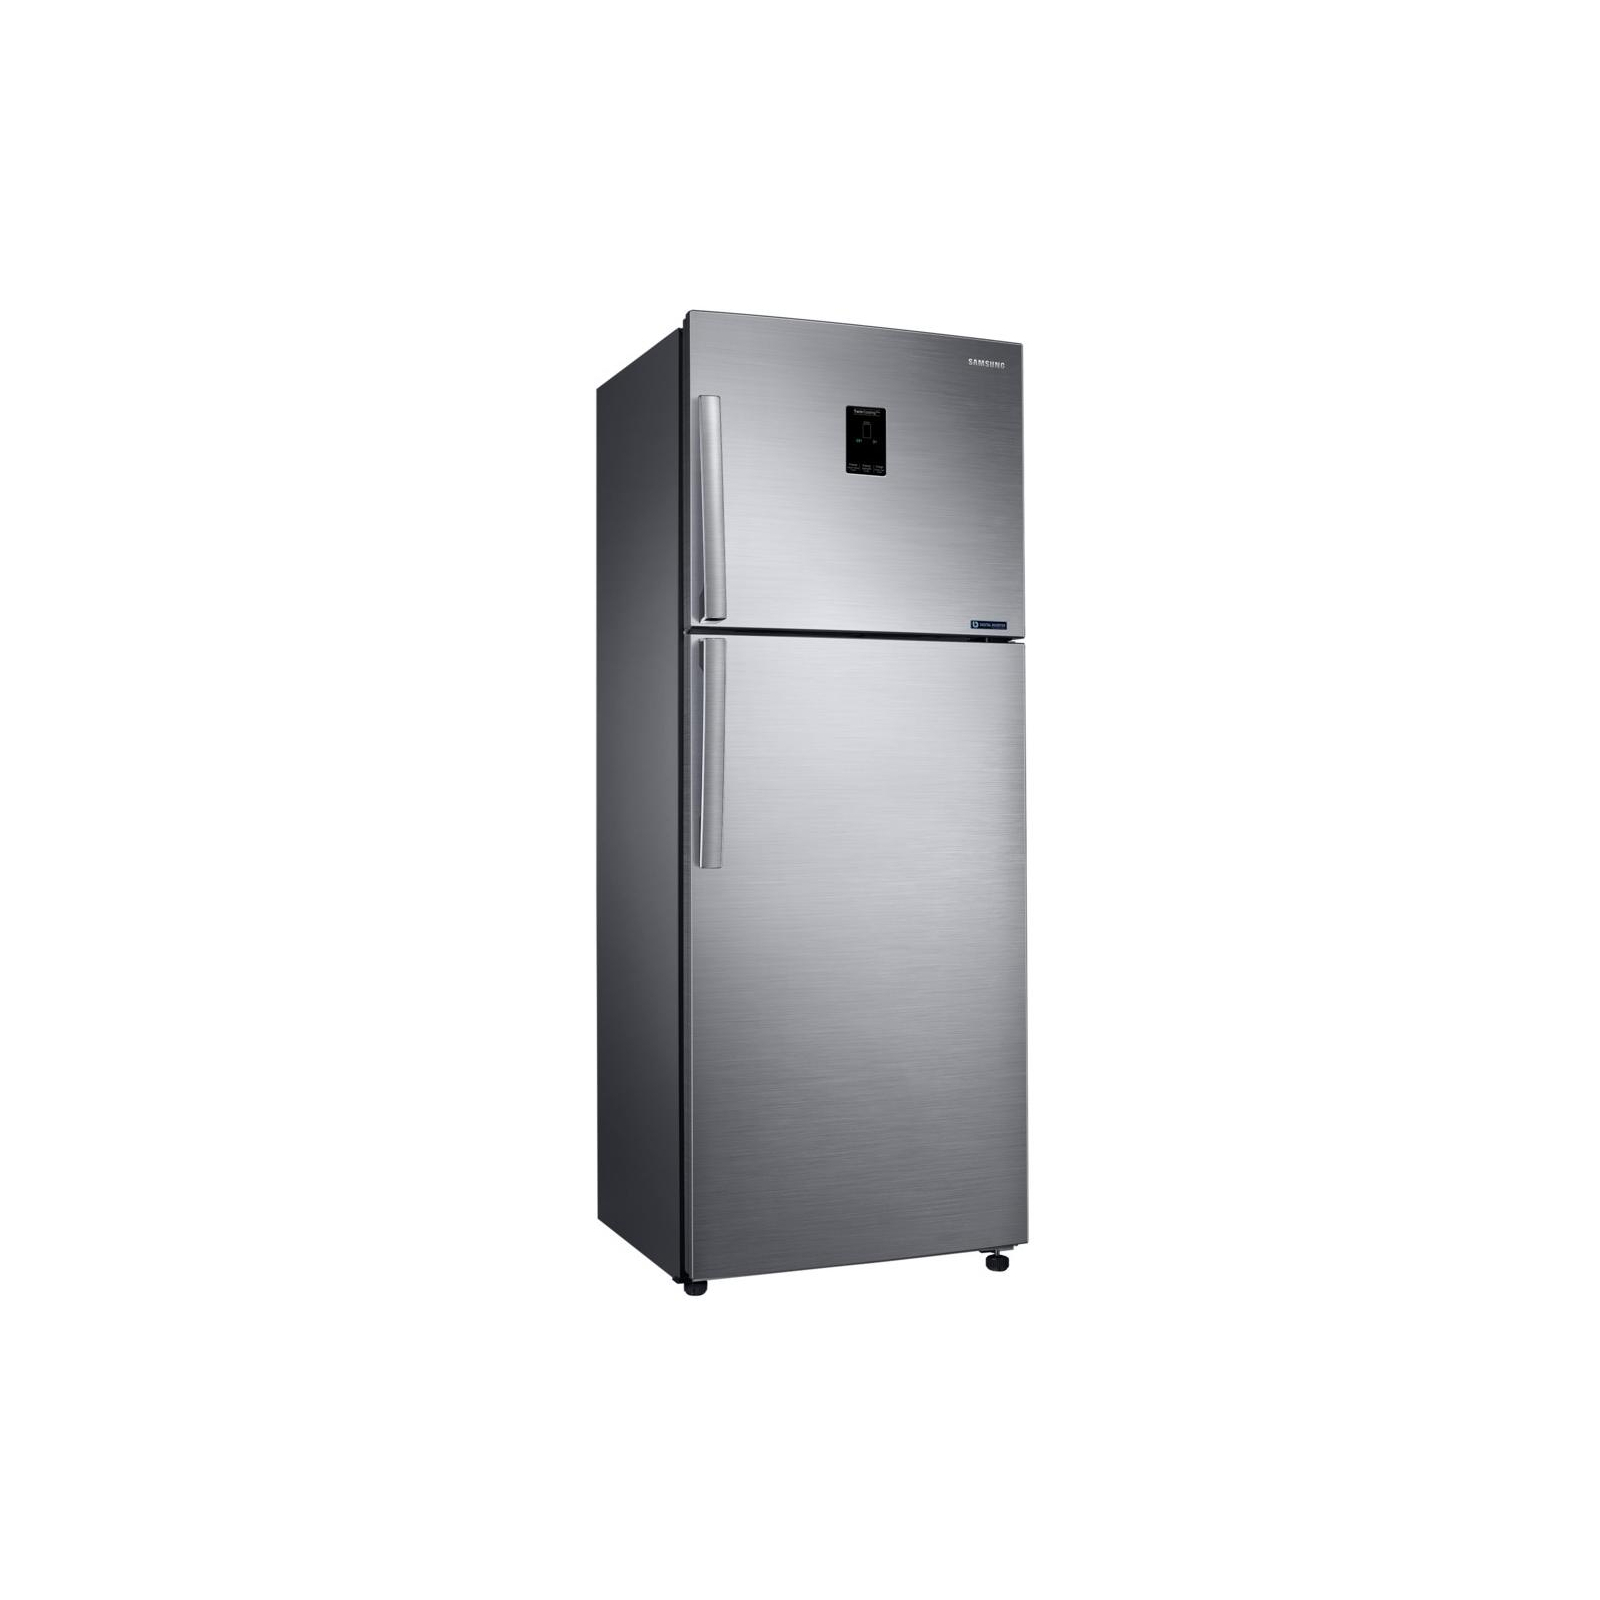 Холодильник Samsung RT38K5400S9/UA изображение 2